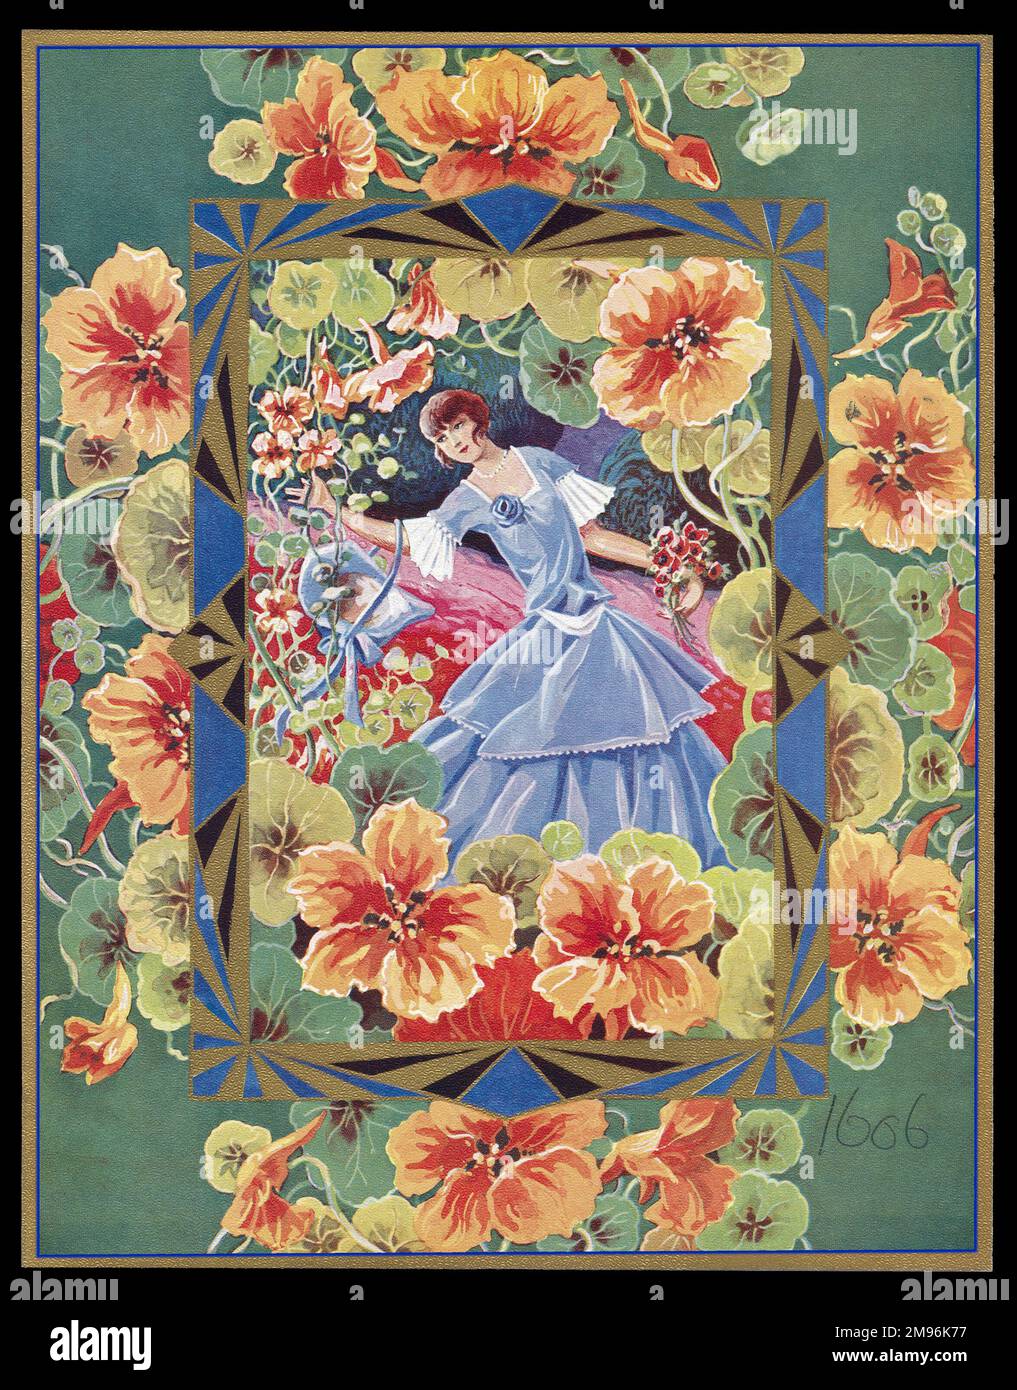 Schokoladenschachtel mit einer Dame in einem blauen Kleid in einem Garten, die Blumen pflückt und pflegt. Stockfoto